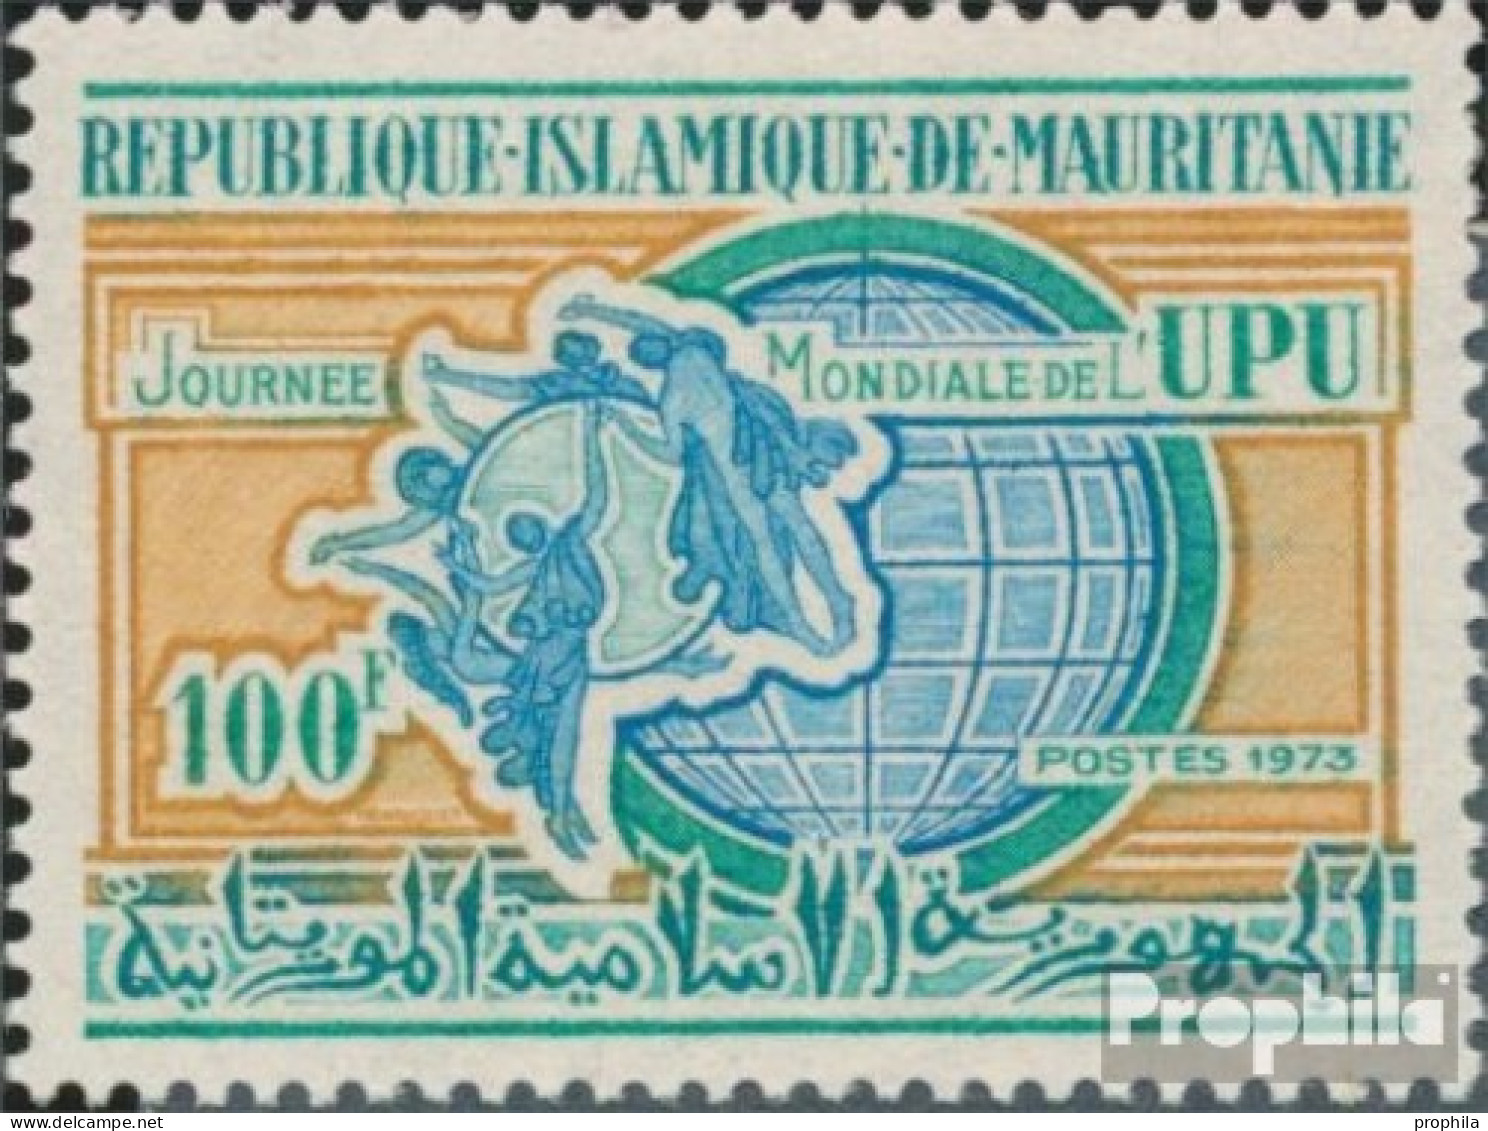 Mauretanien 455 (kompl.Ausg.) Postfrisch 1973 Posttag - Mauritanie (1960-...)